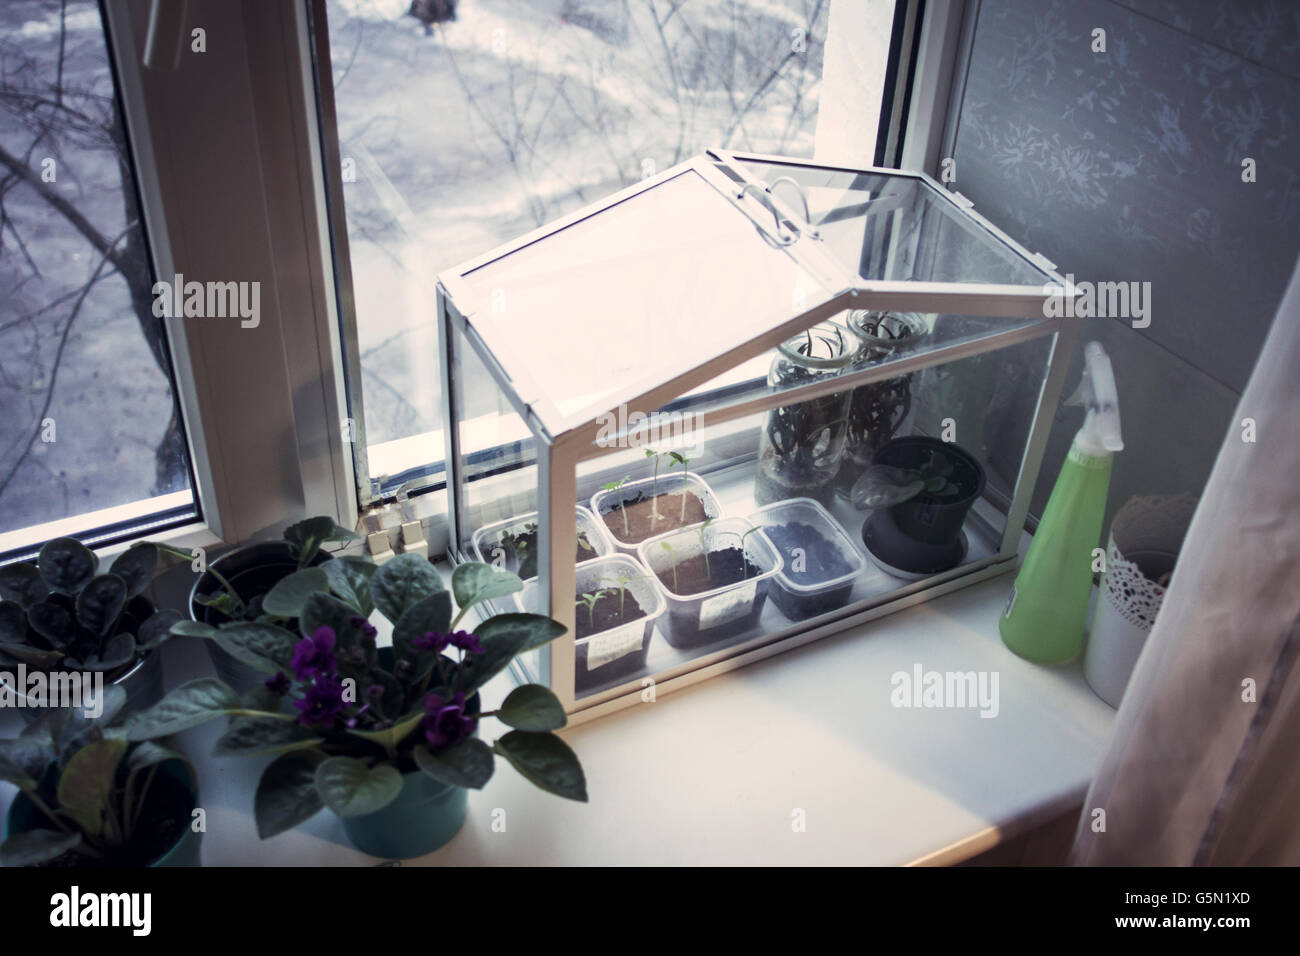 Terrarium plants growing in window Stock Photo